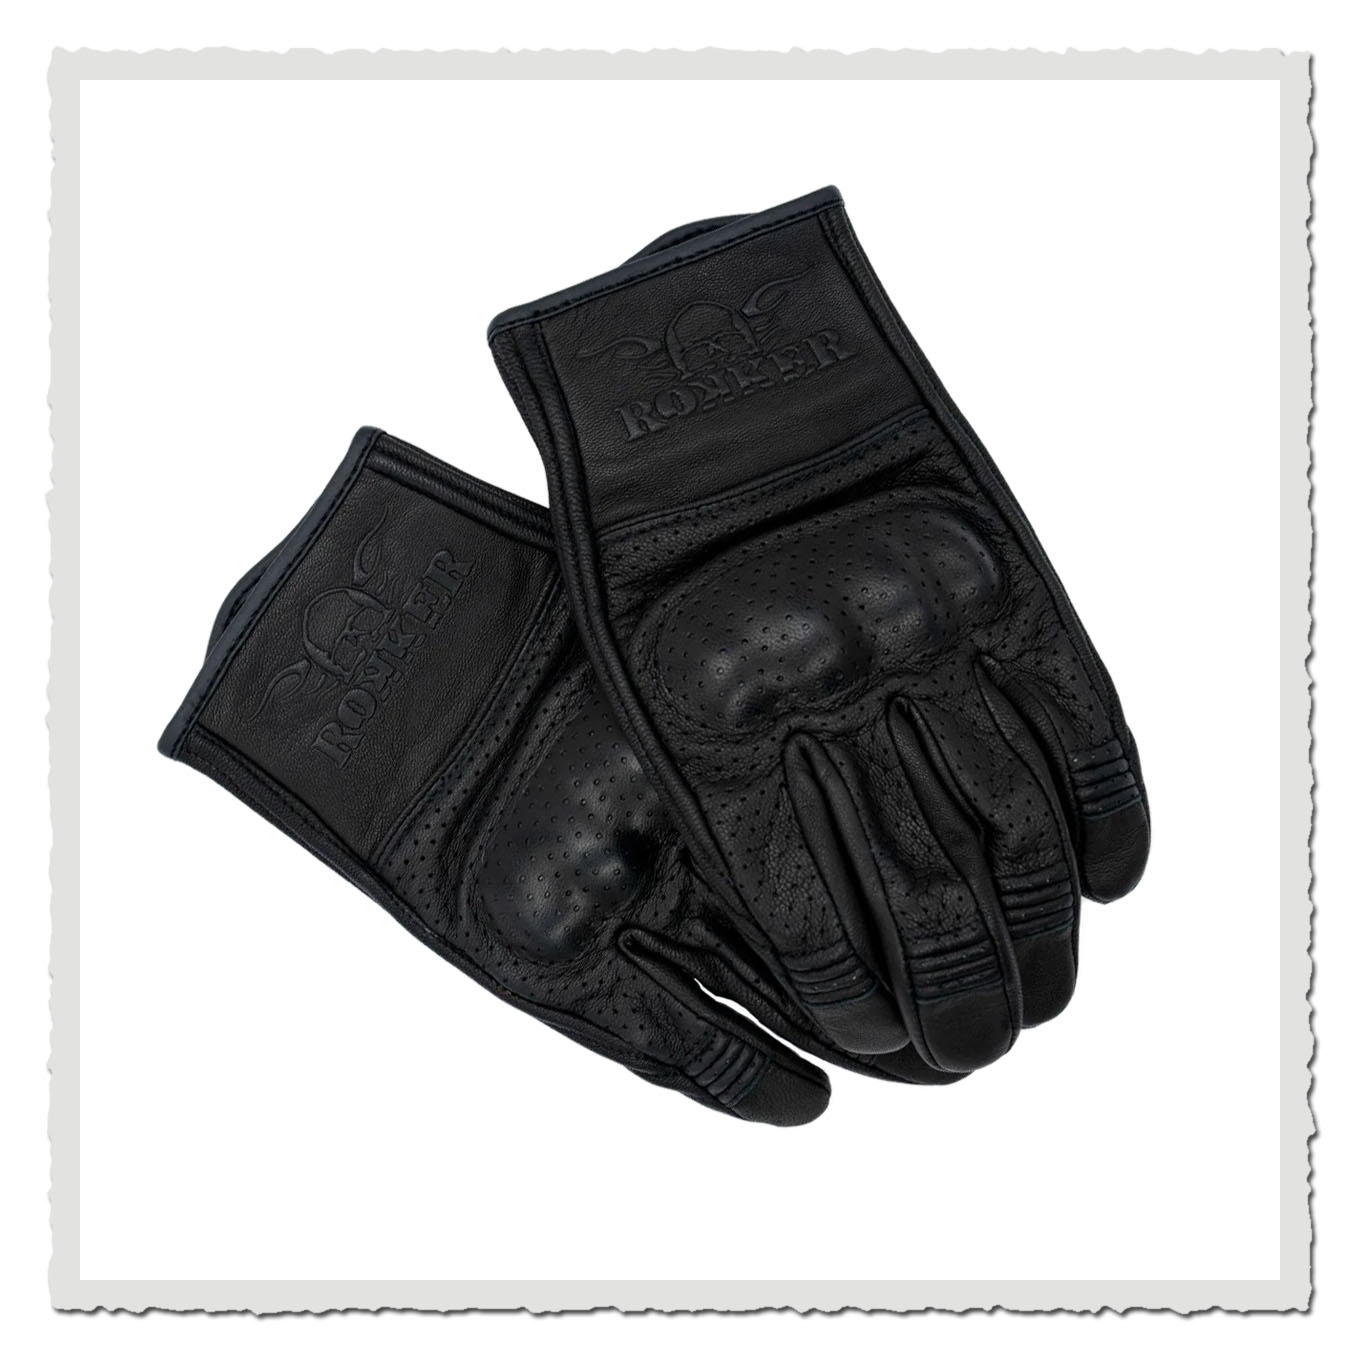 Motorrad Handschuhe Tuscon Black